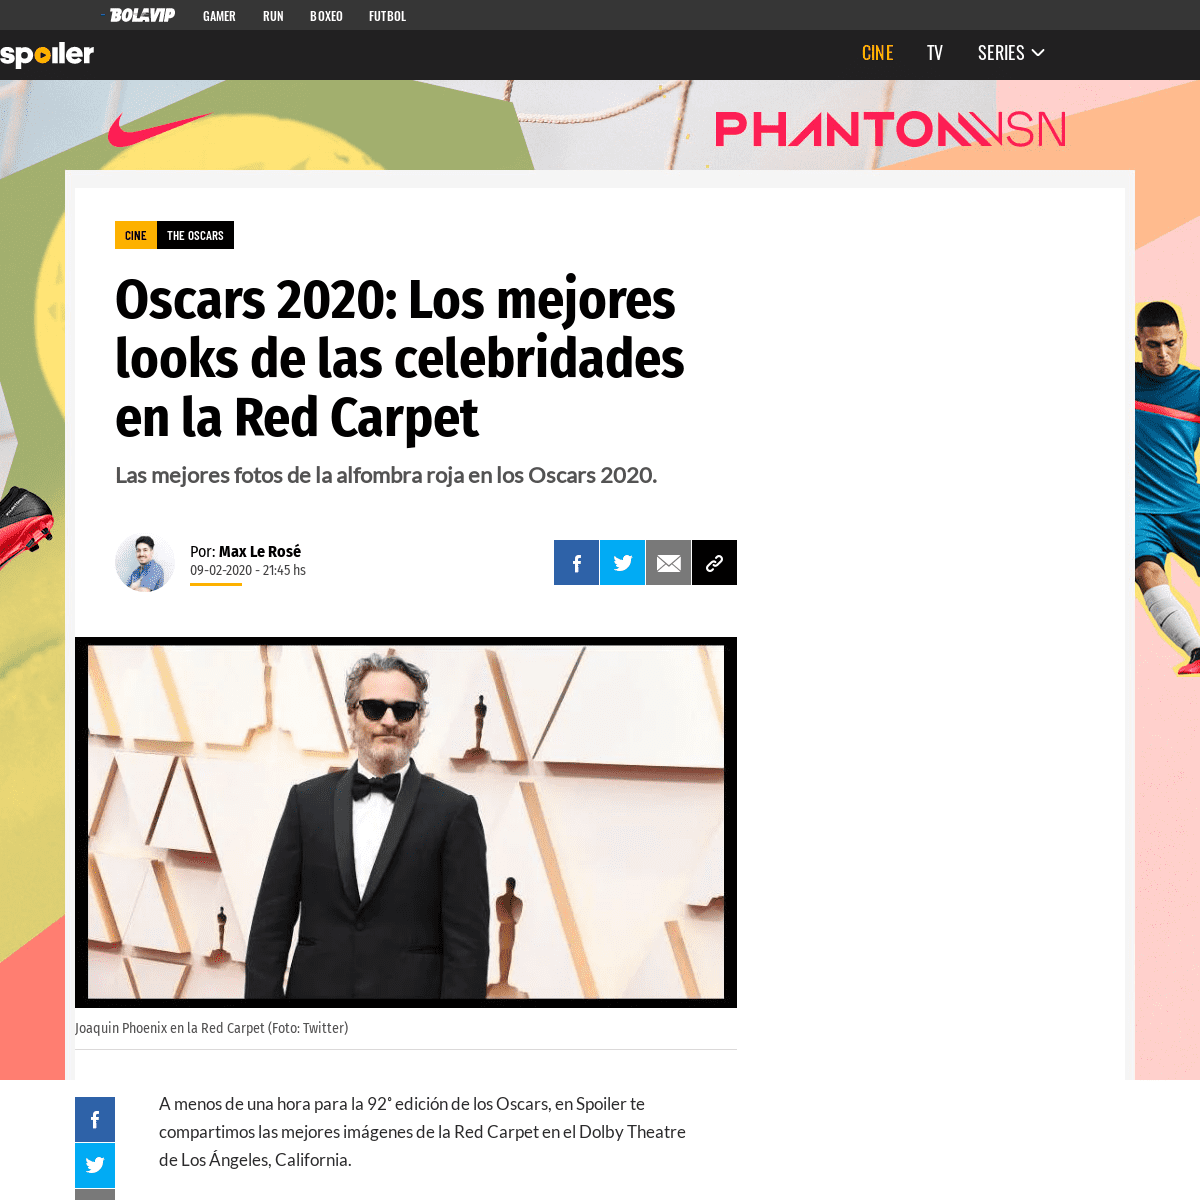 A complete backup of spoiler.bolavip.com/cine/Oscars-2020-Los-mejores-looks-de-las-celebridades-en-la-Red-Carpet-20200209-0007.h